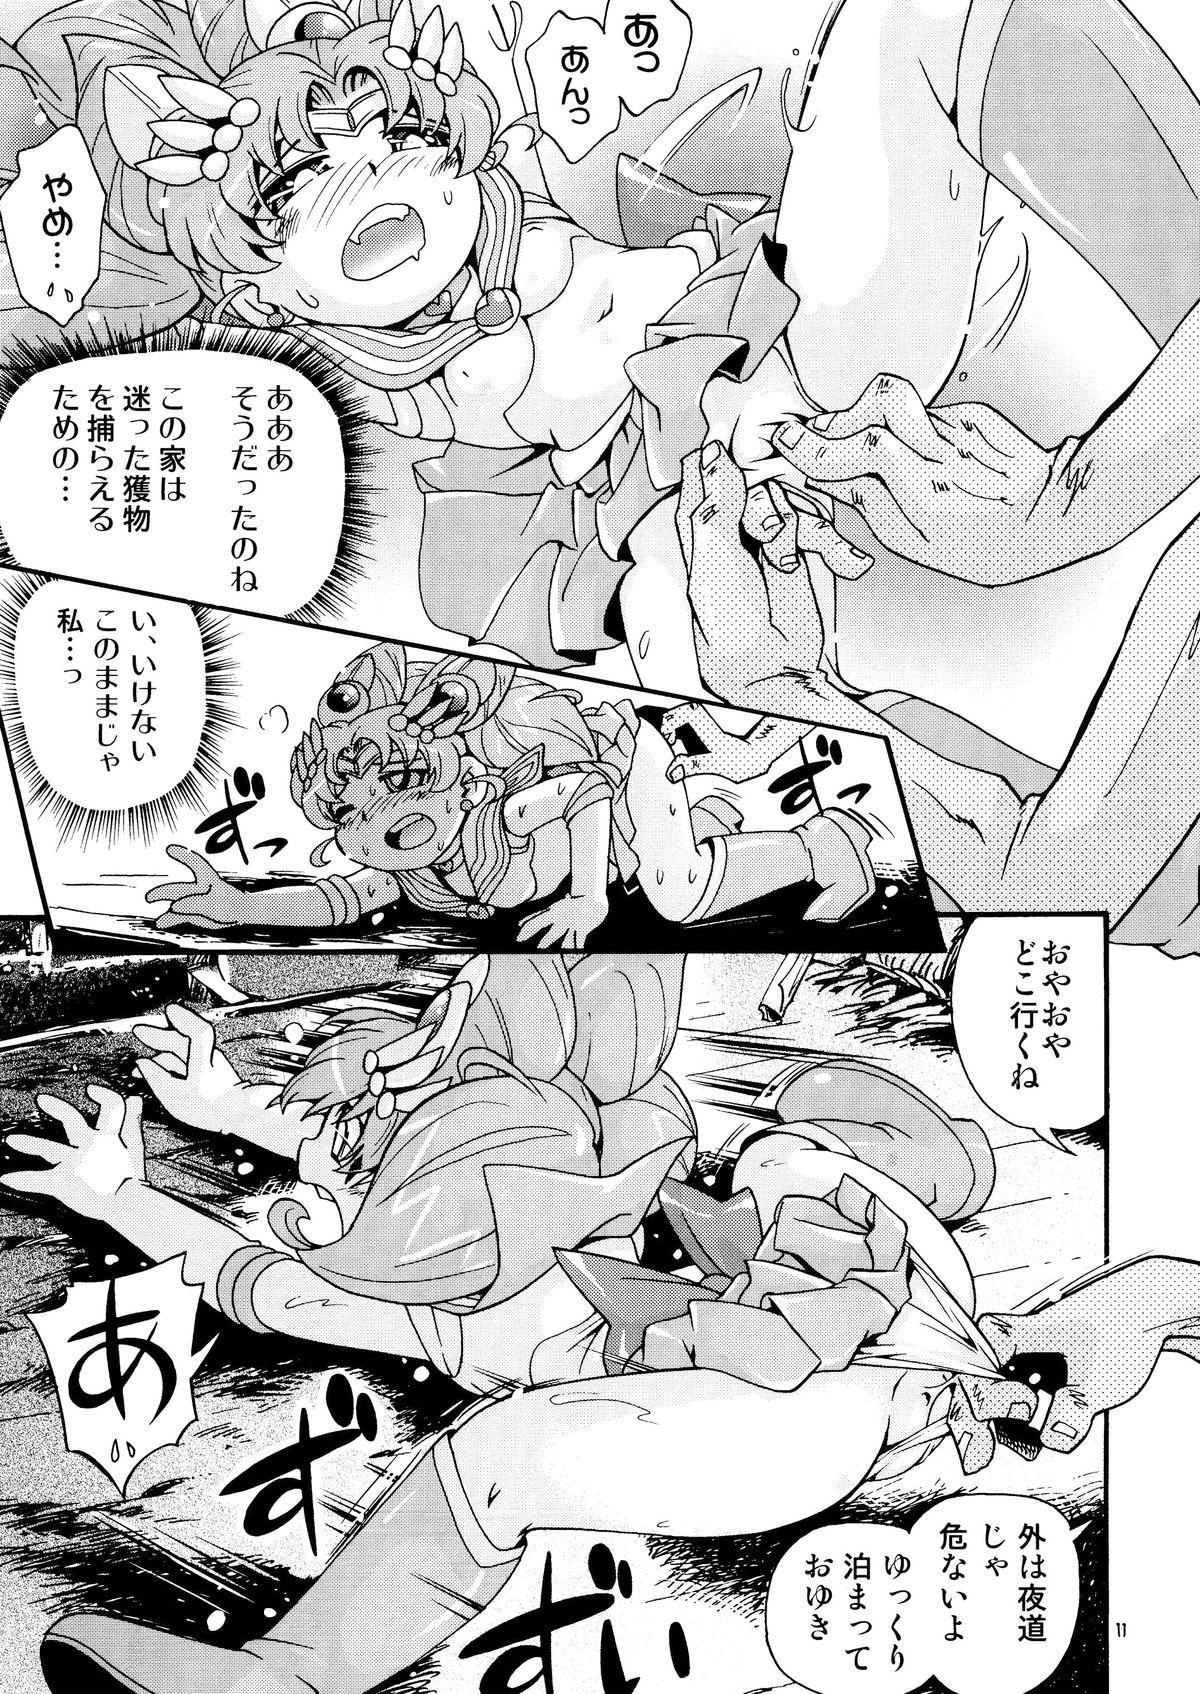 Teen Blowjob Chiccha na Bishoujo Senshi 4 - Sailor moon Older - Page 11